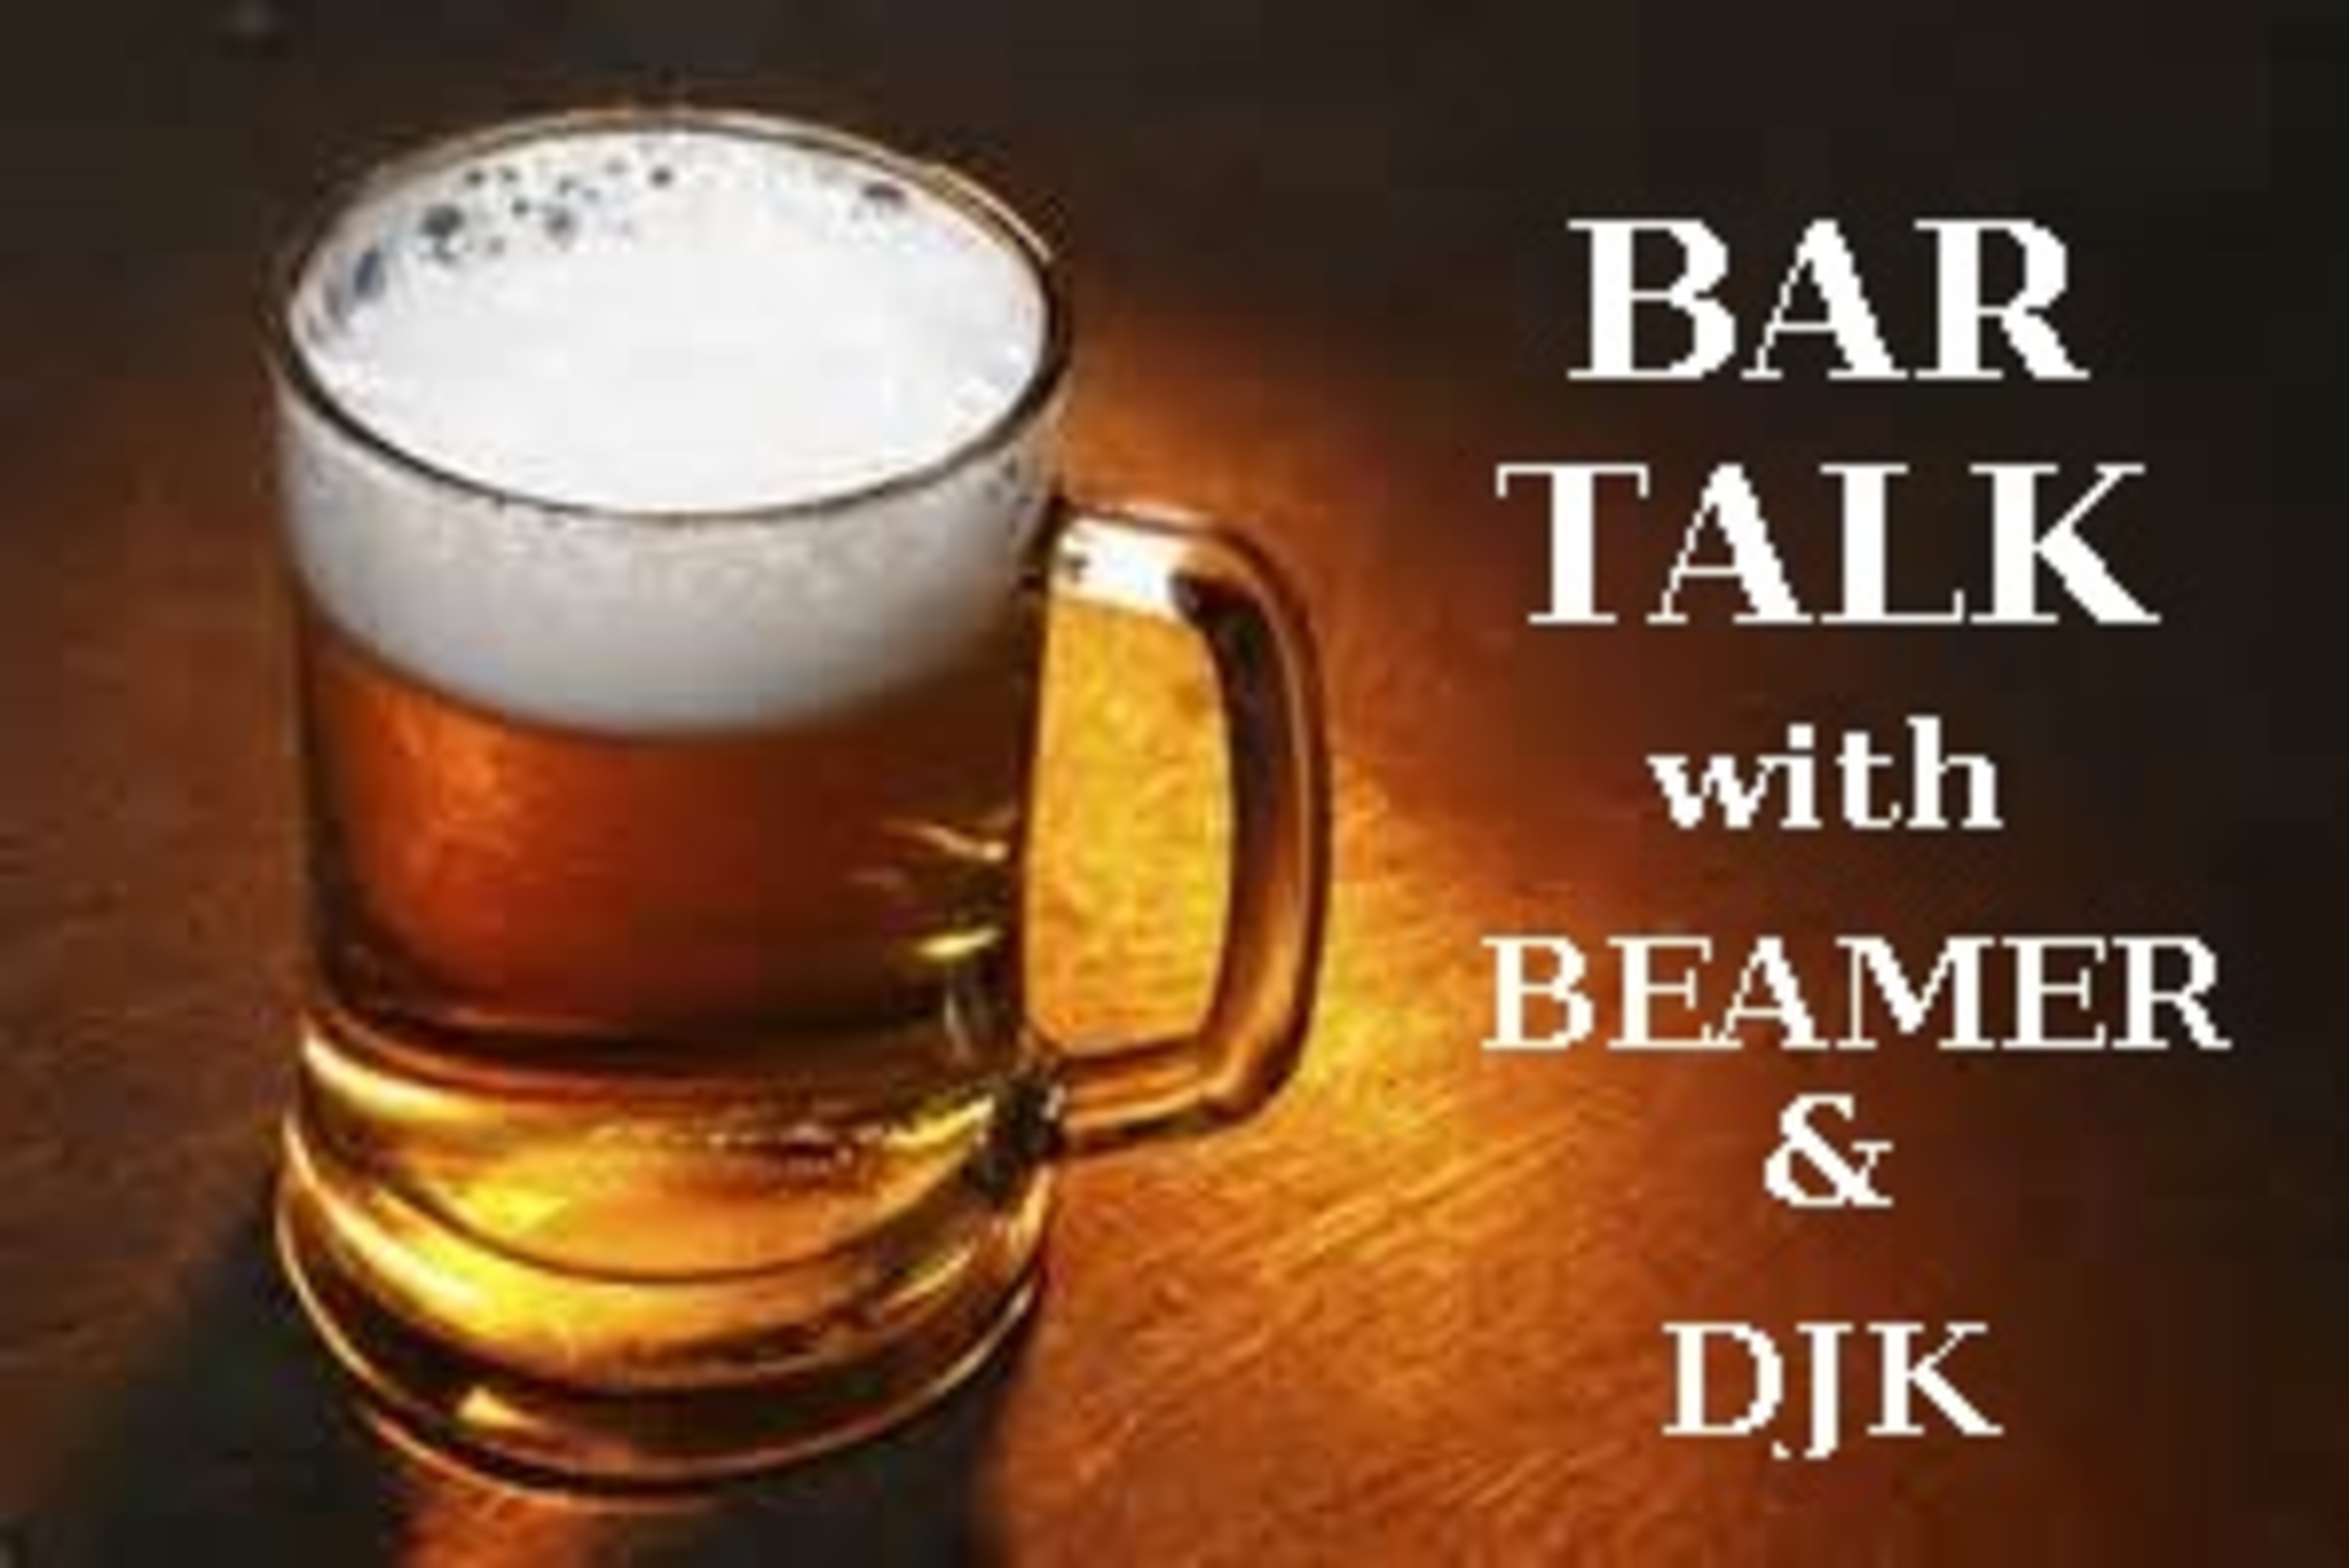 Bar Talk with Beamer & DJK